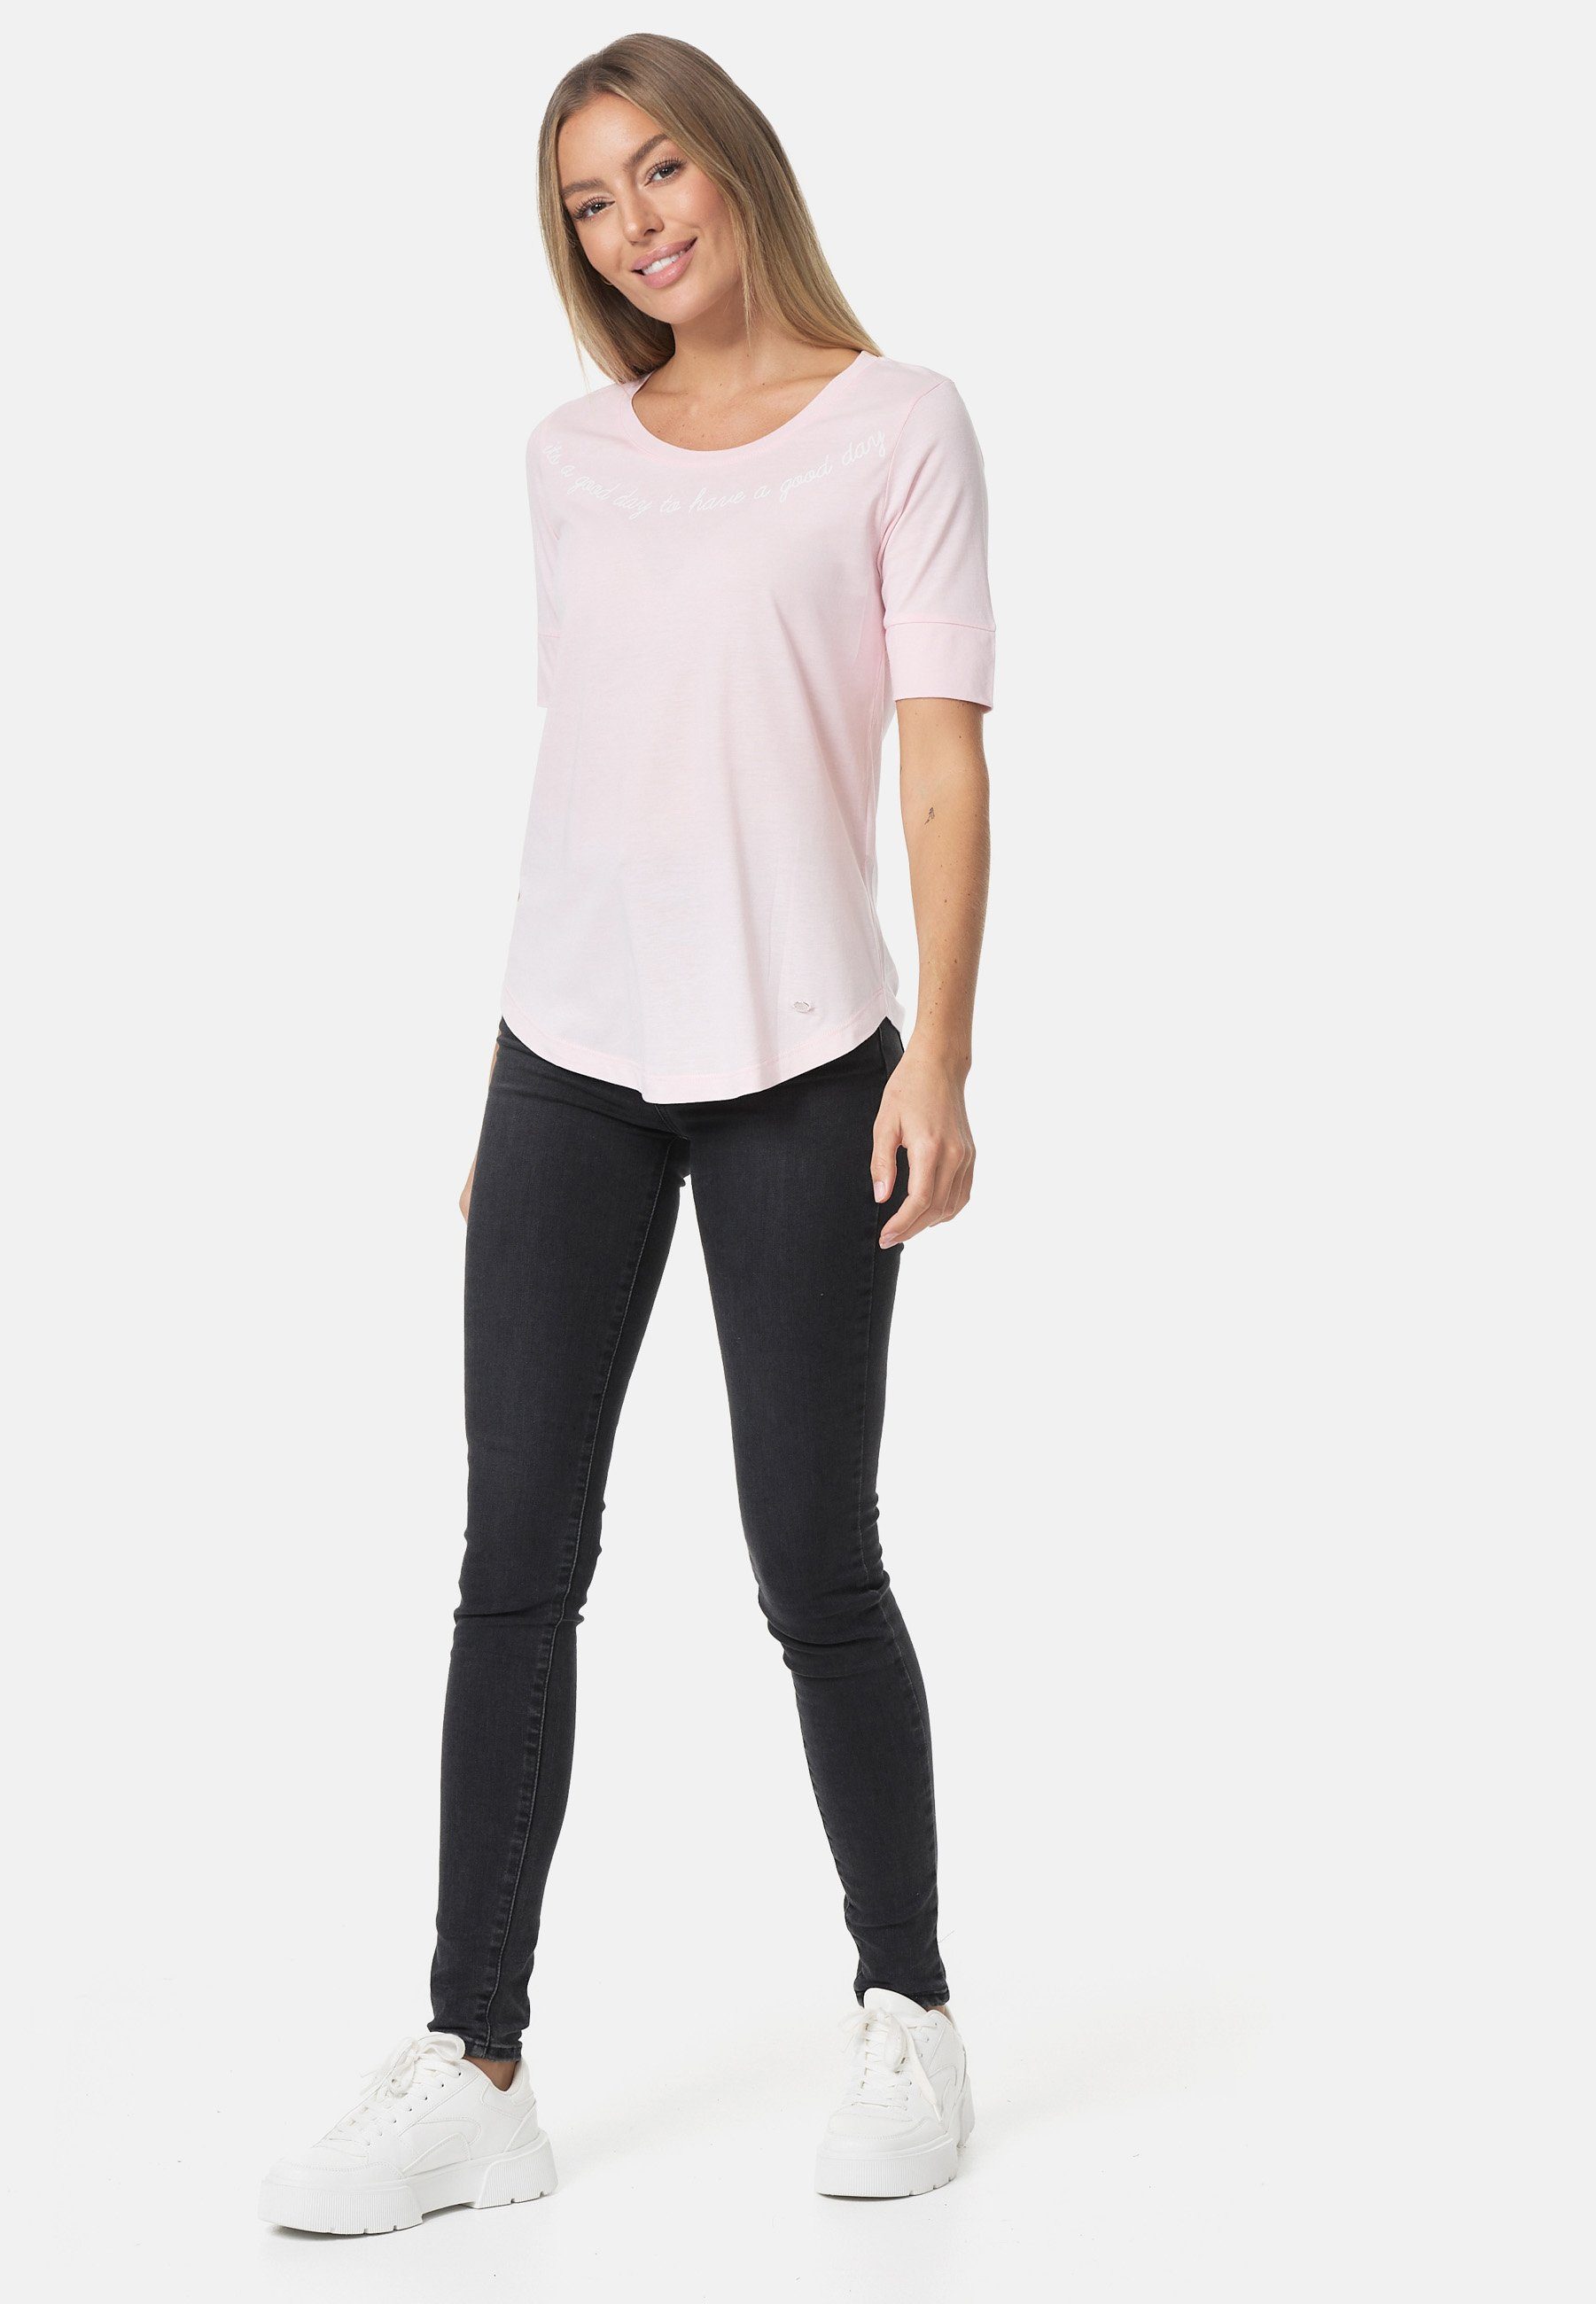 Decay T-Shirt mit stylischem rosa-weiß Print